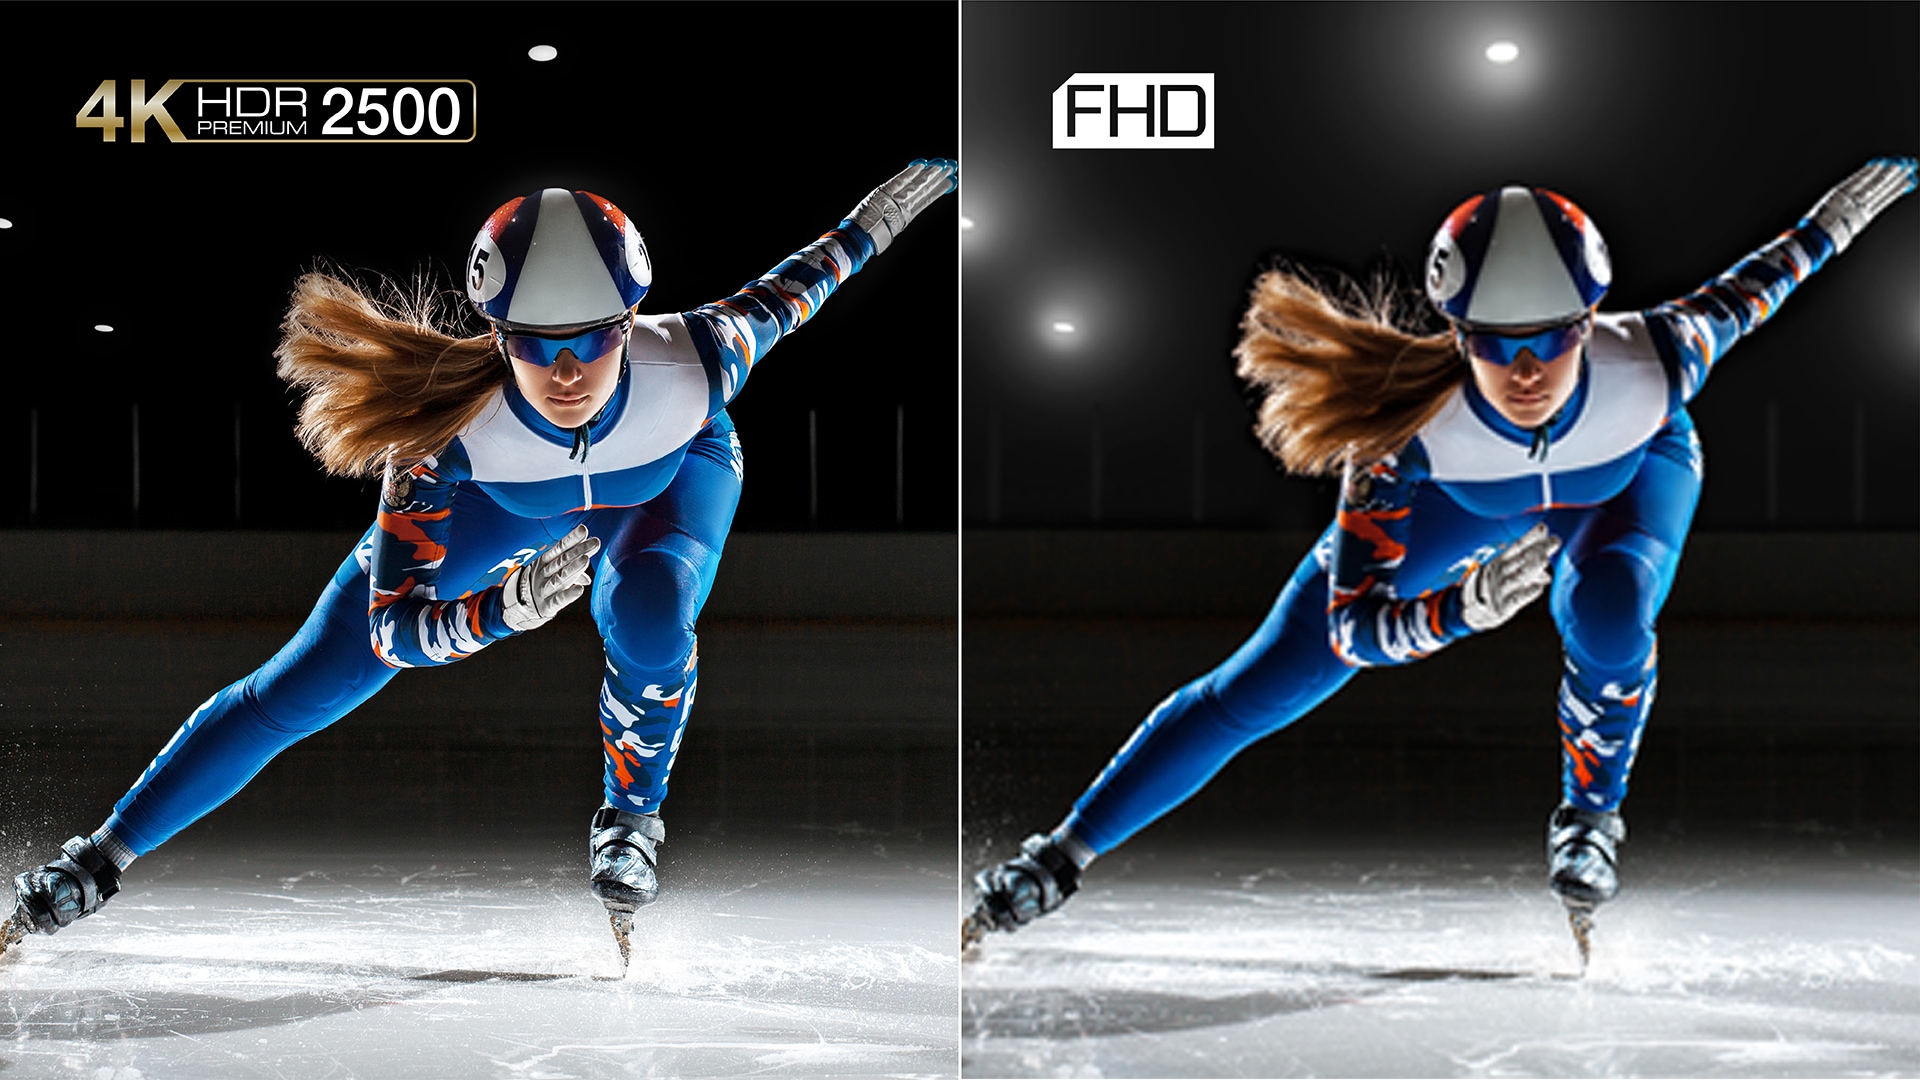 Två jämförande bilder av en kvinnlig professionell skridskoåkare i fart, där man tydligt ser färg- och kontrastskillnader